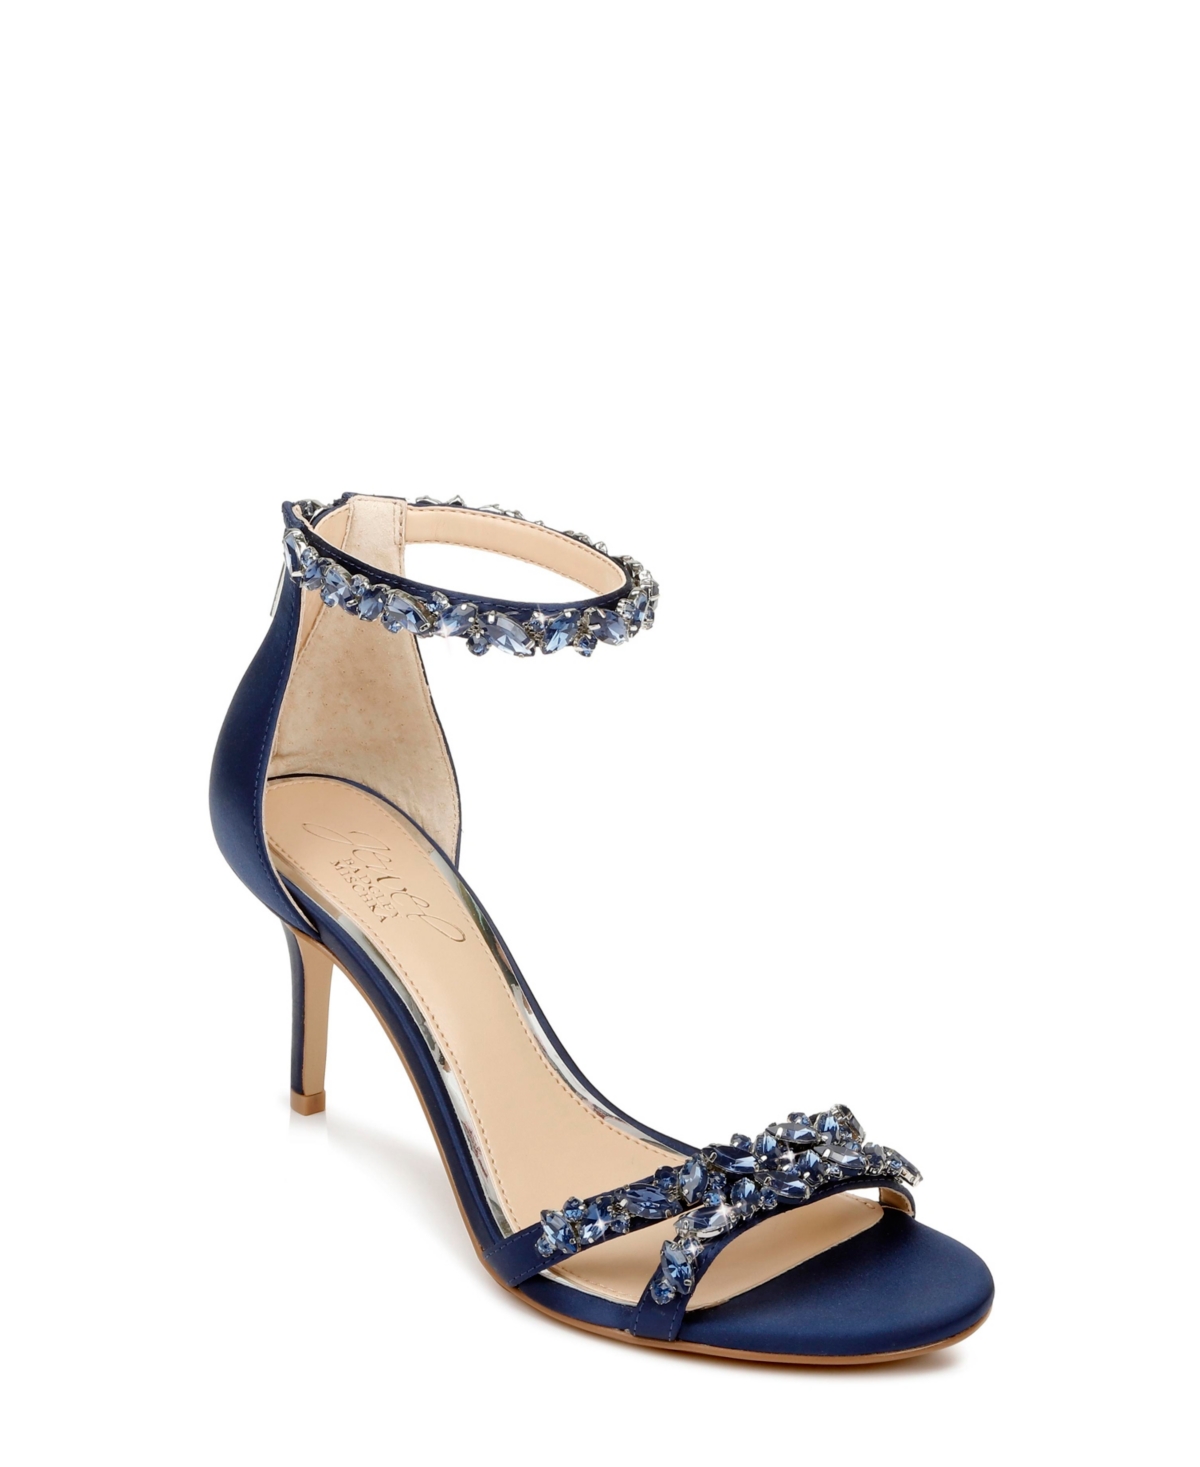 Jewel Badgley Mischka Caroline Embellished Ankle-Strap Evening Sandals Women's Shoes